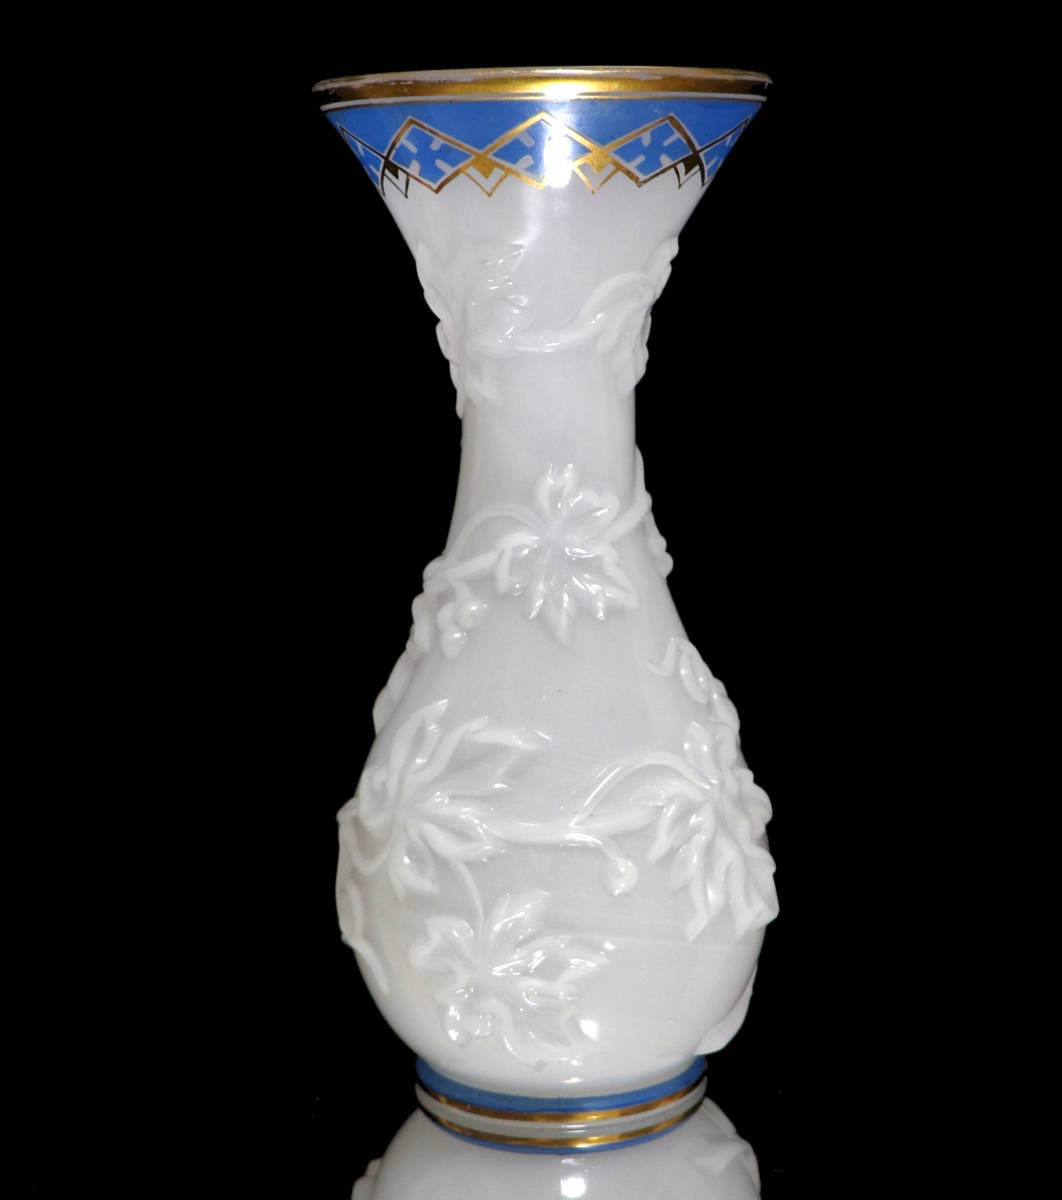 オールド・バカラ (BACCARAT) 19世紀 美術館級作品 パリ万博試作品 レアデザイン 大型花瓶 オパーリンクリスタルガラス製 金彩エナメル